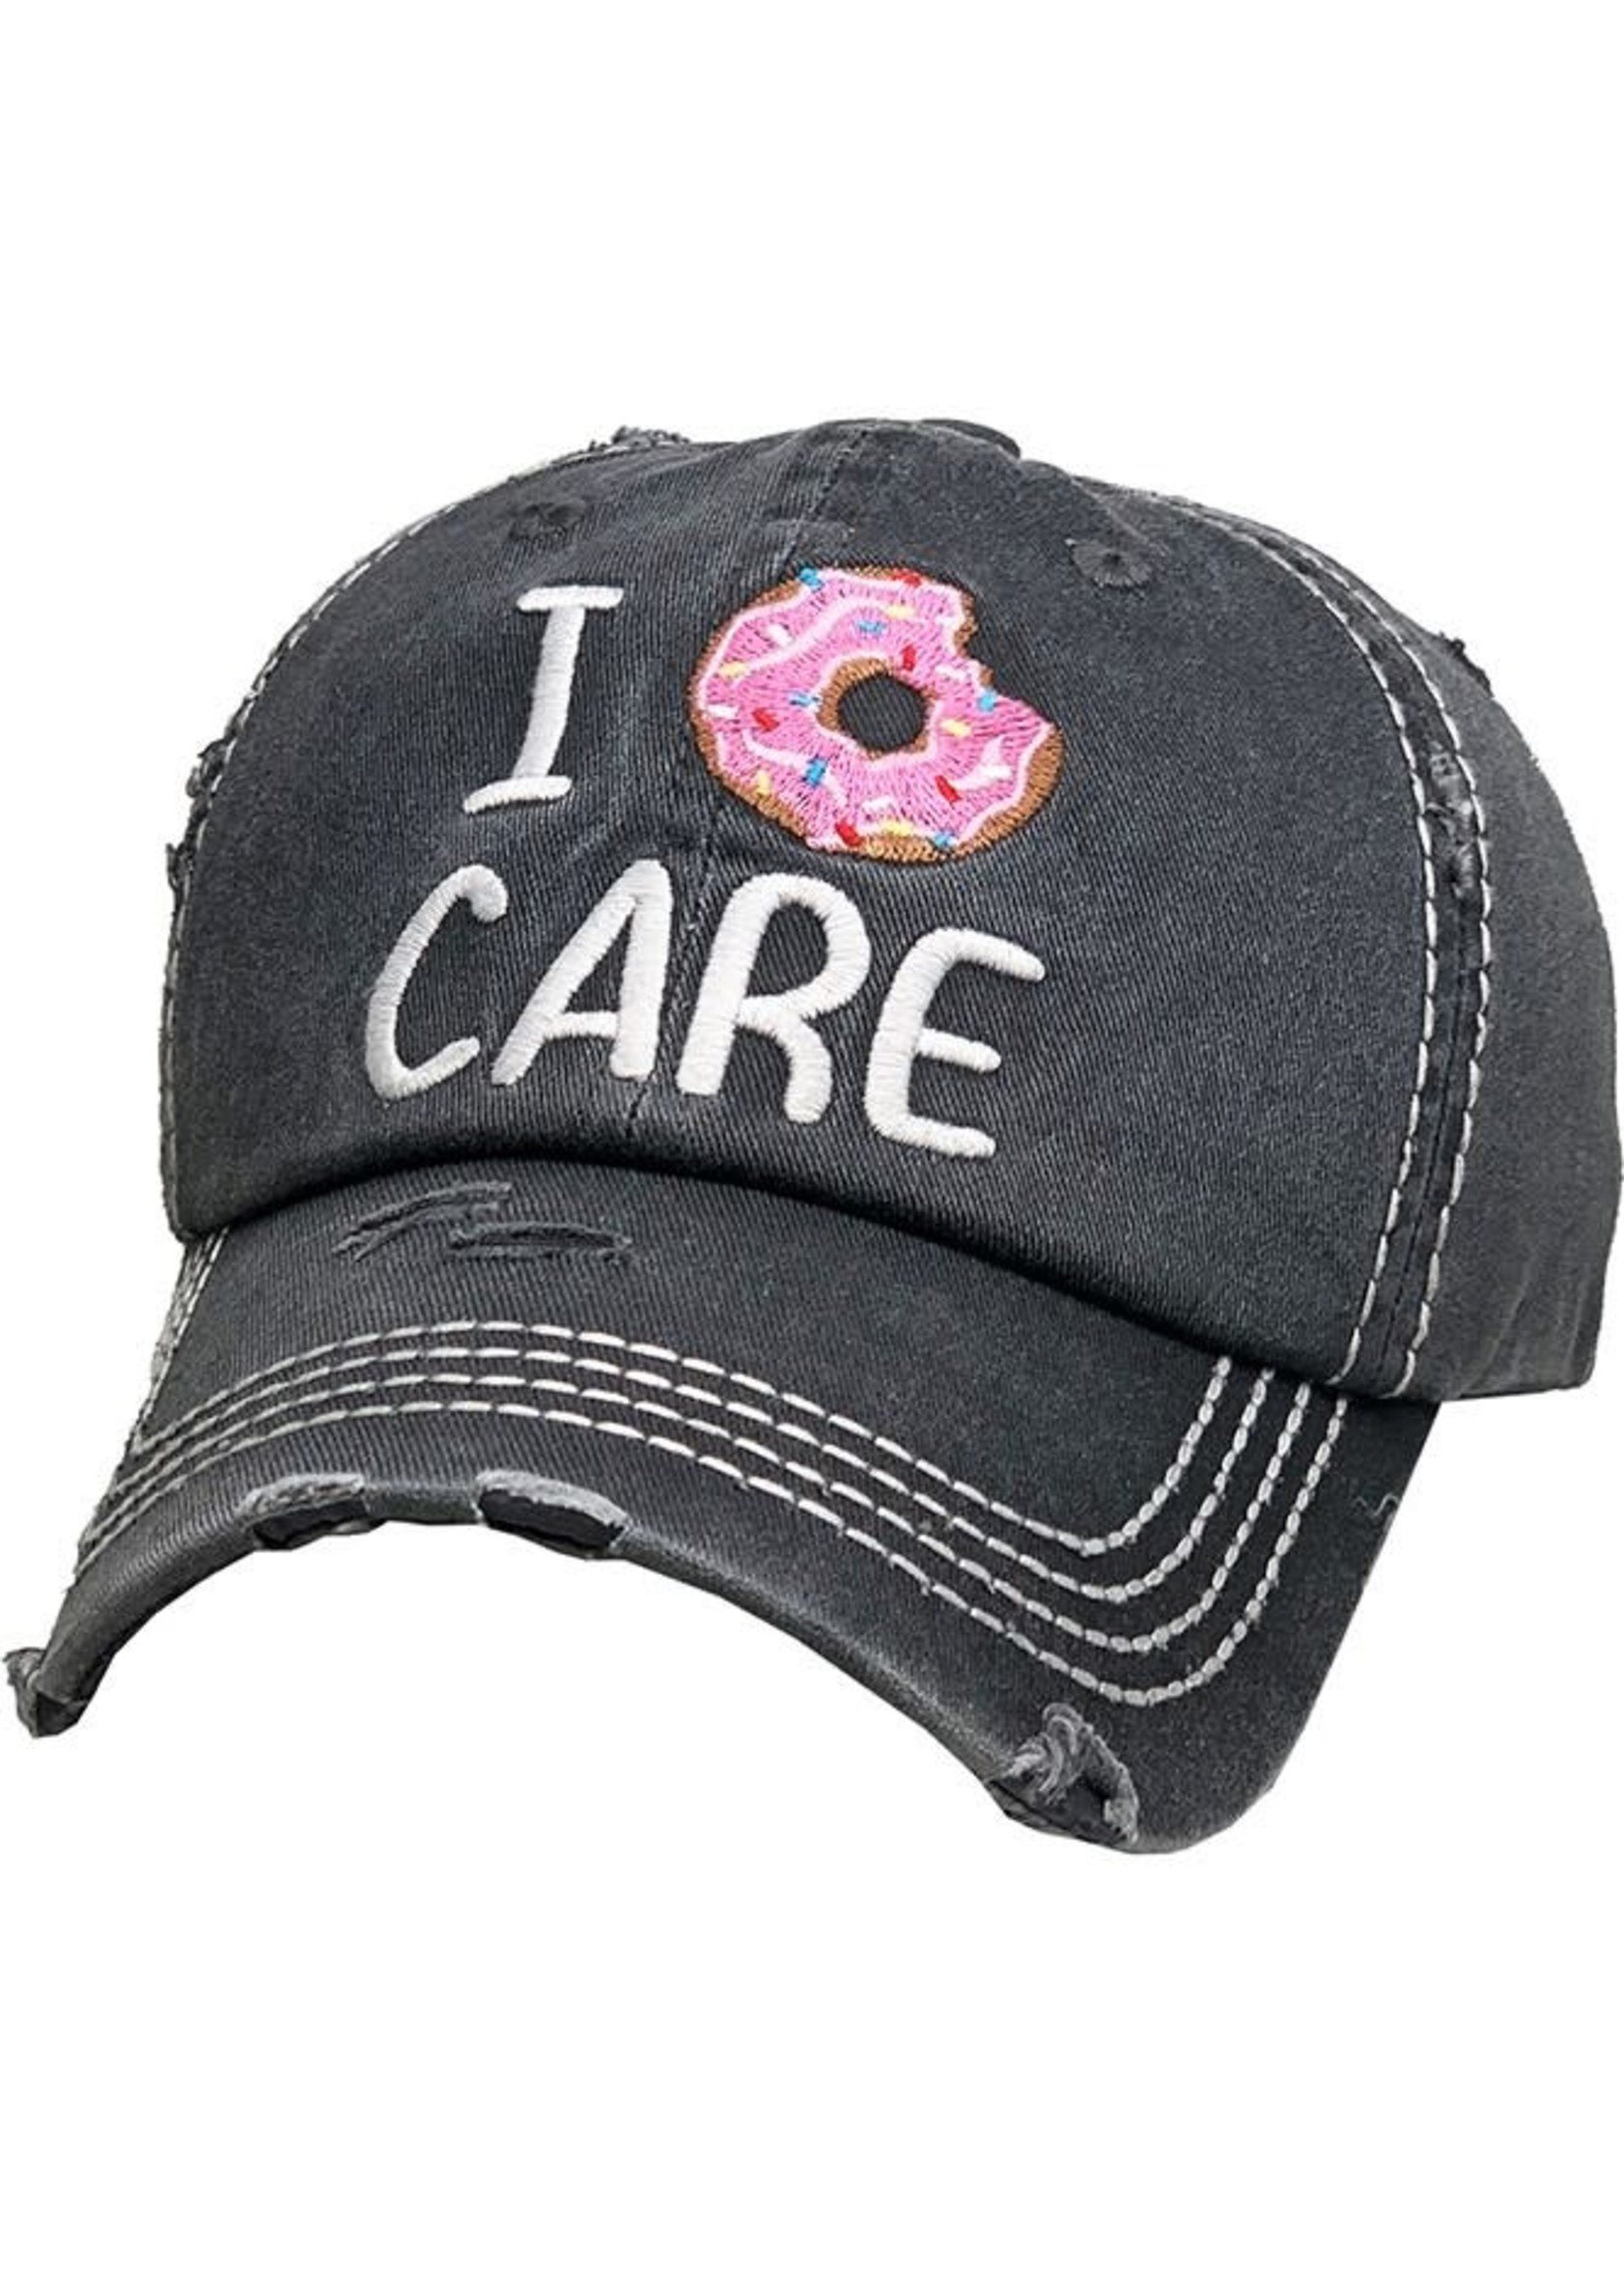 I Donut Care Vintage Hat